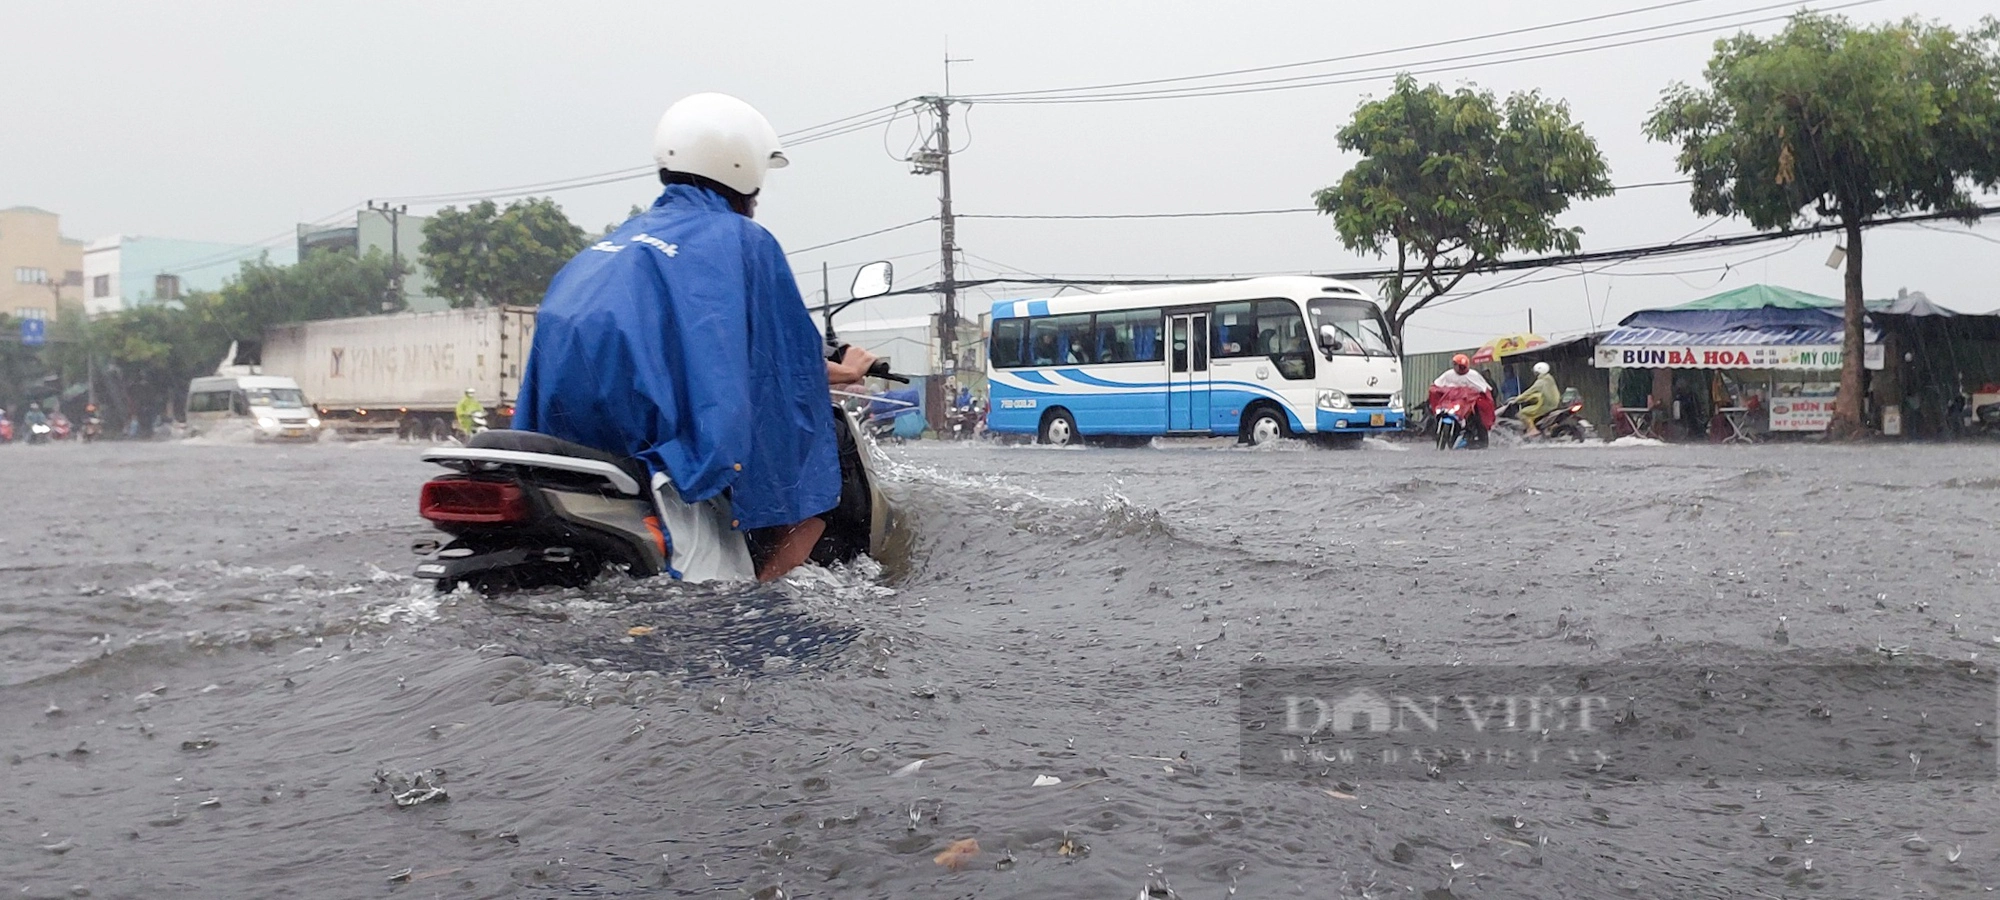 Đường ngập nước lênh láng, người dân chật vật dẫn xe chết máy sau mưa lớn tại Đà Nẵng - Ảnh 4.